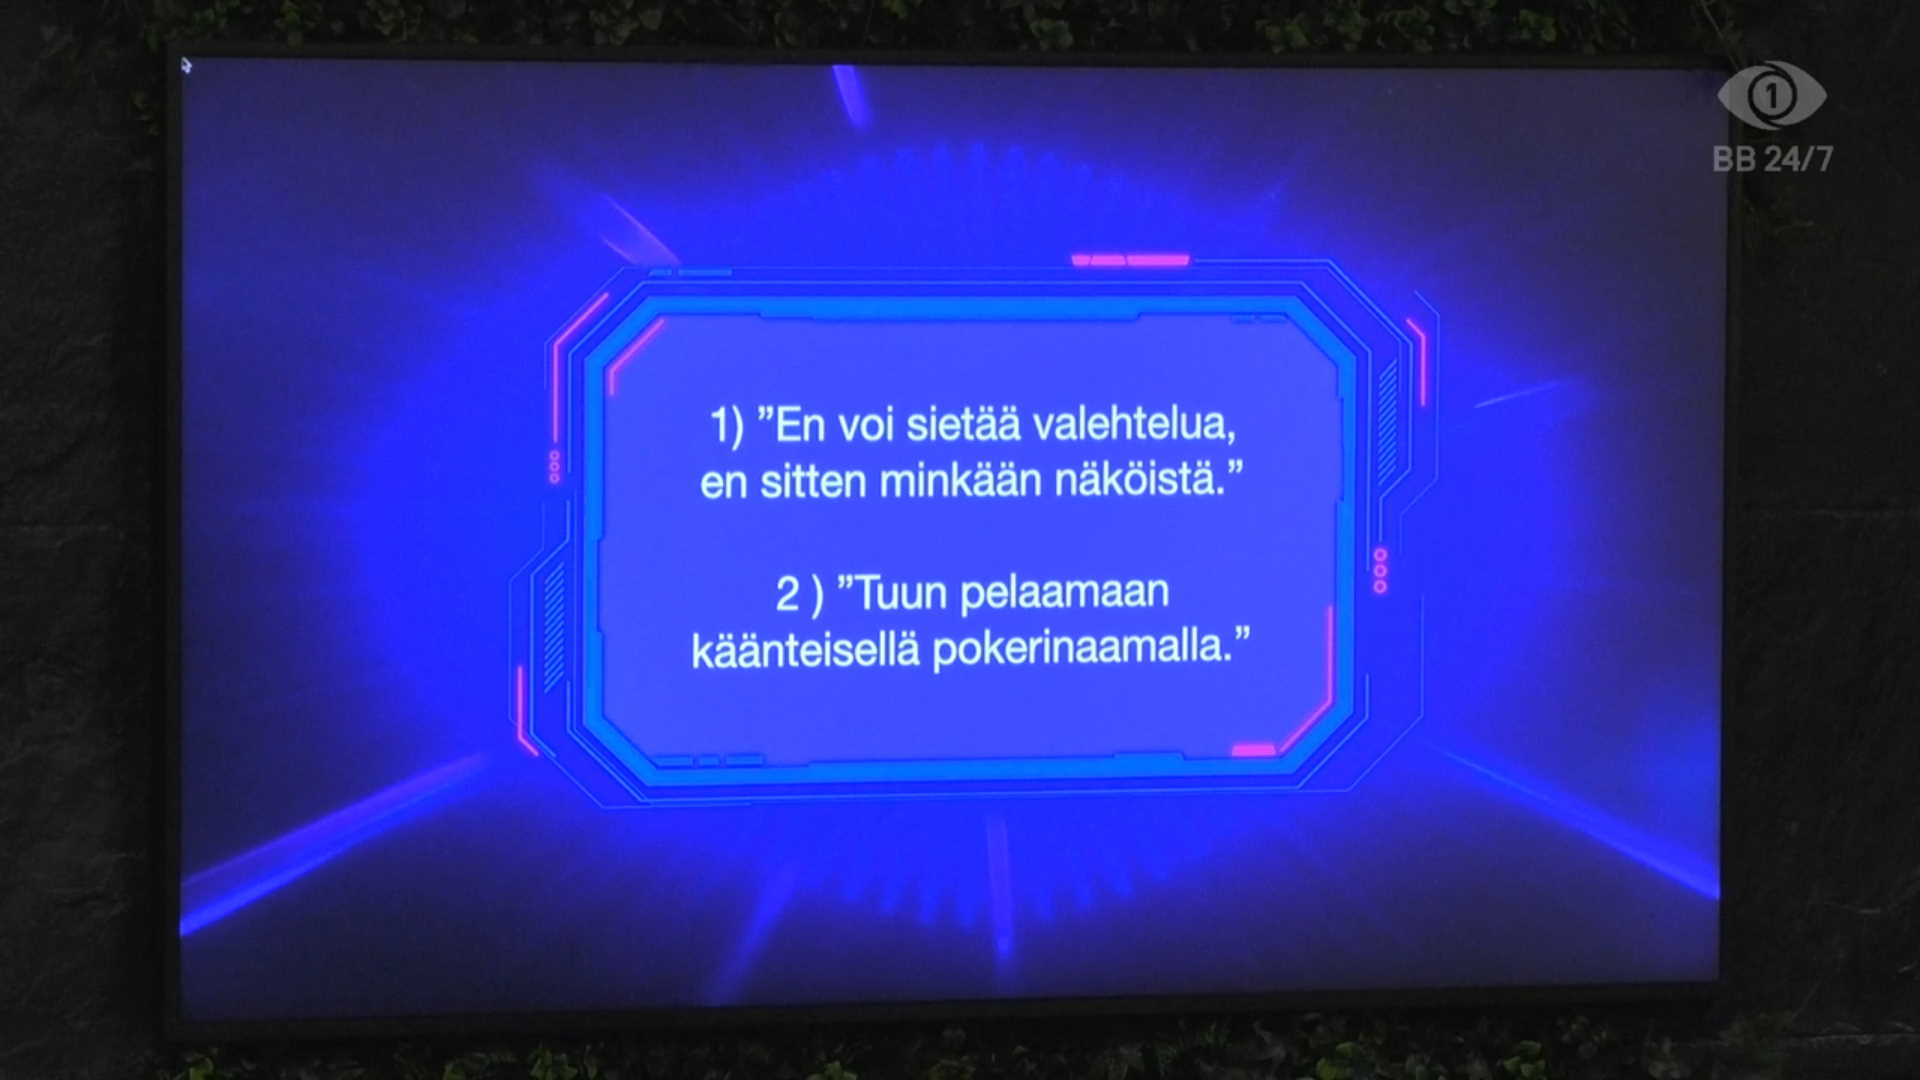 Viimeiset sitaatit ratkaisivat päivätehtävän voiton. Kuva: © Nelonen Media.